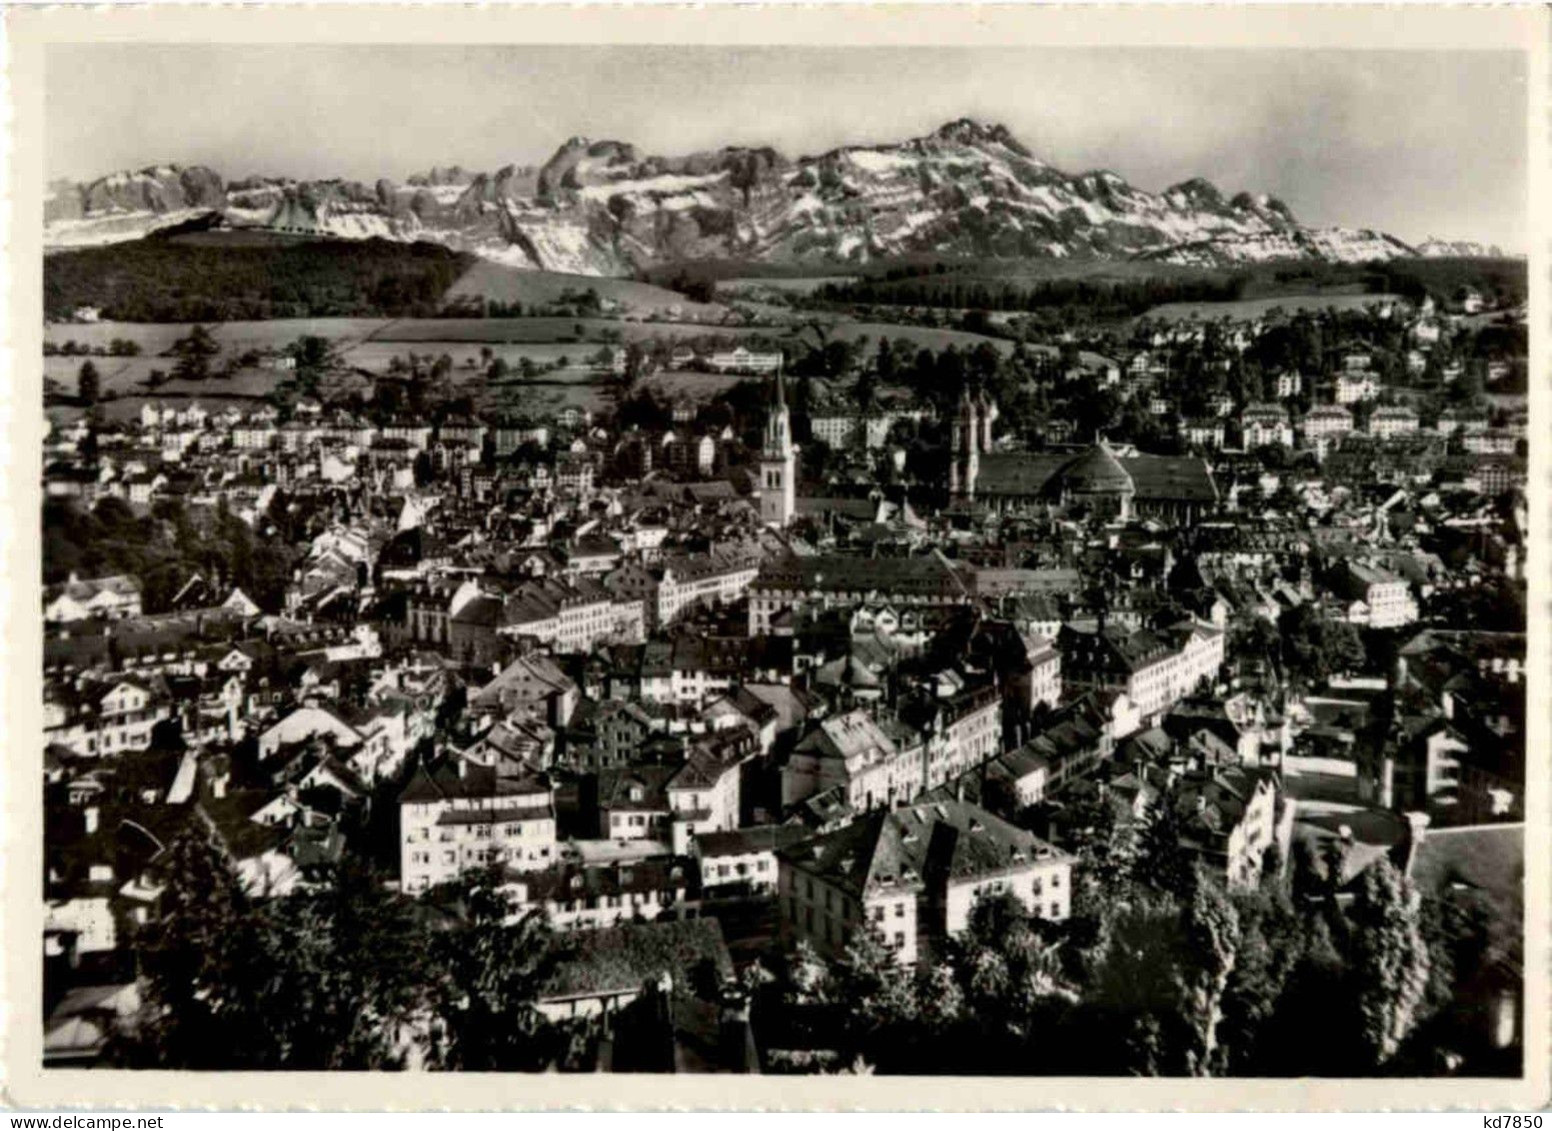 St. Gallen - St. Gallen